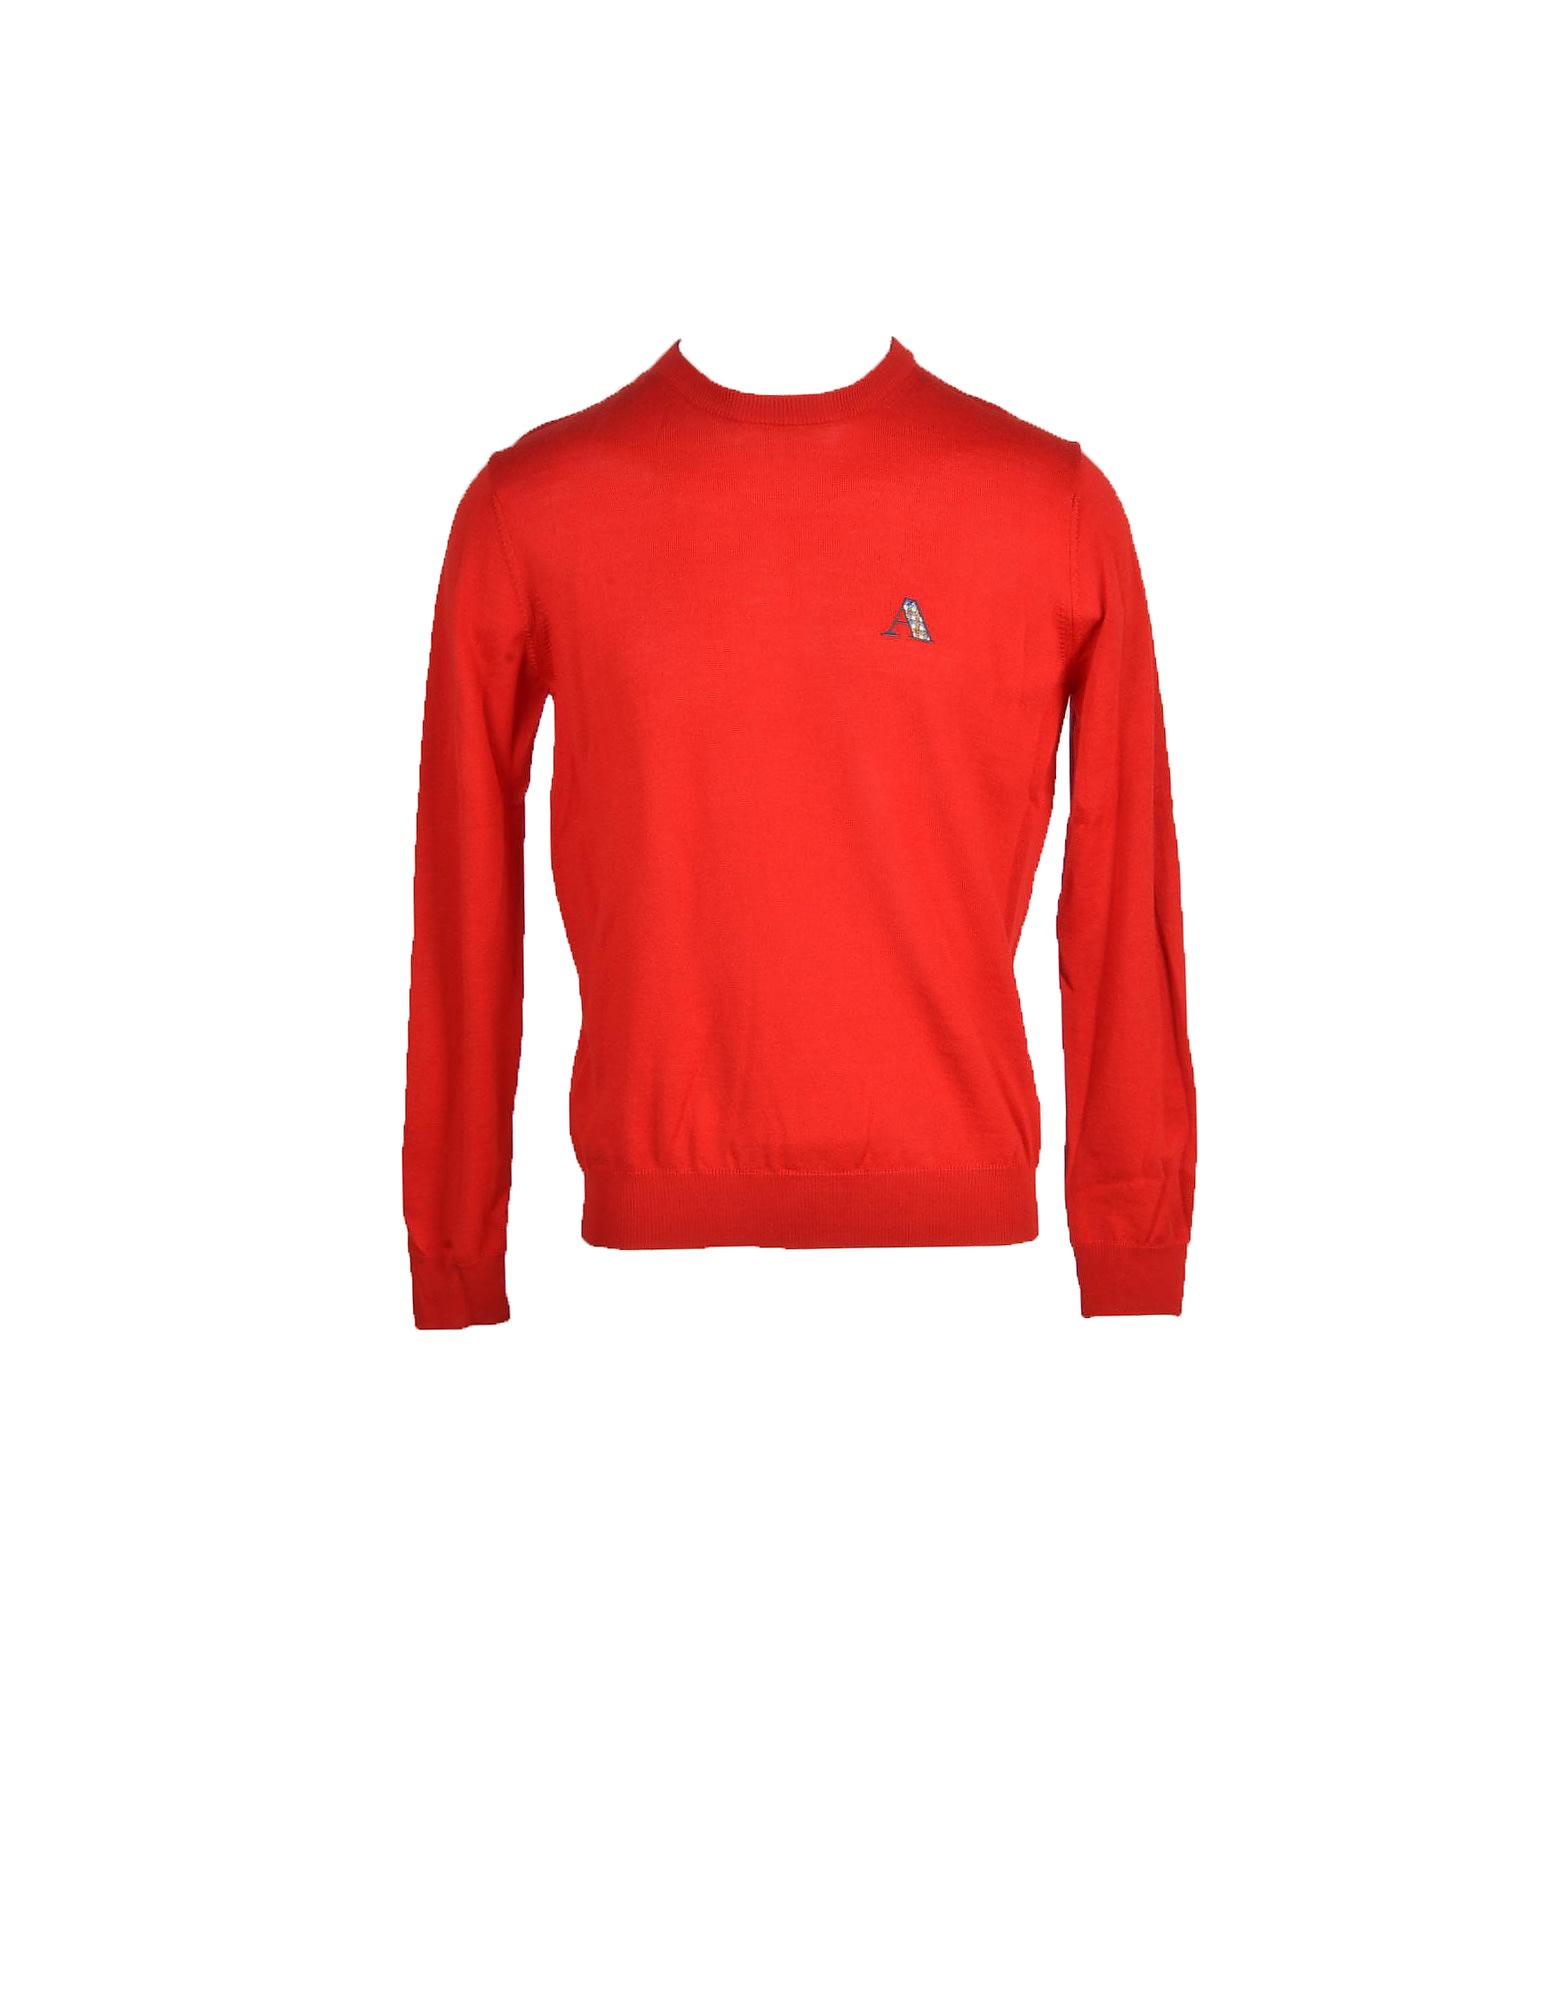 Aquascutum Mens Red Sweater